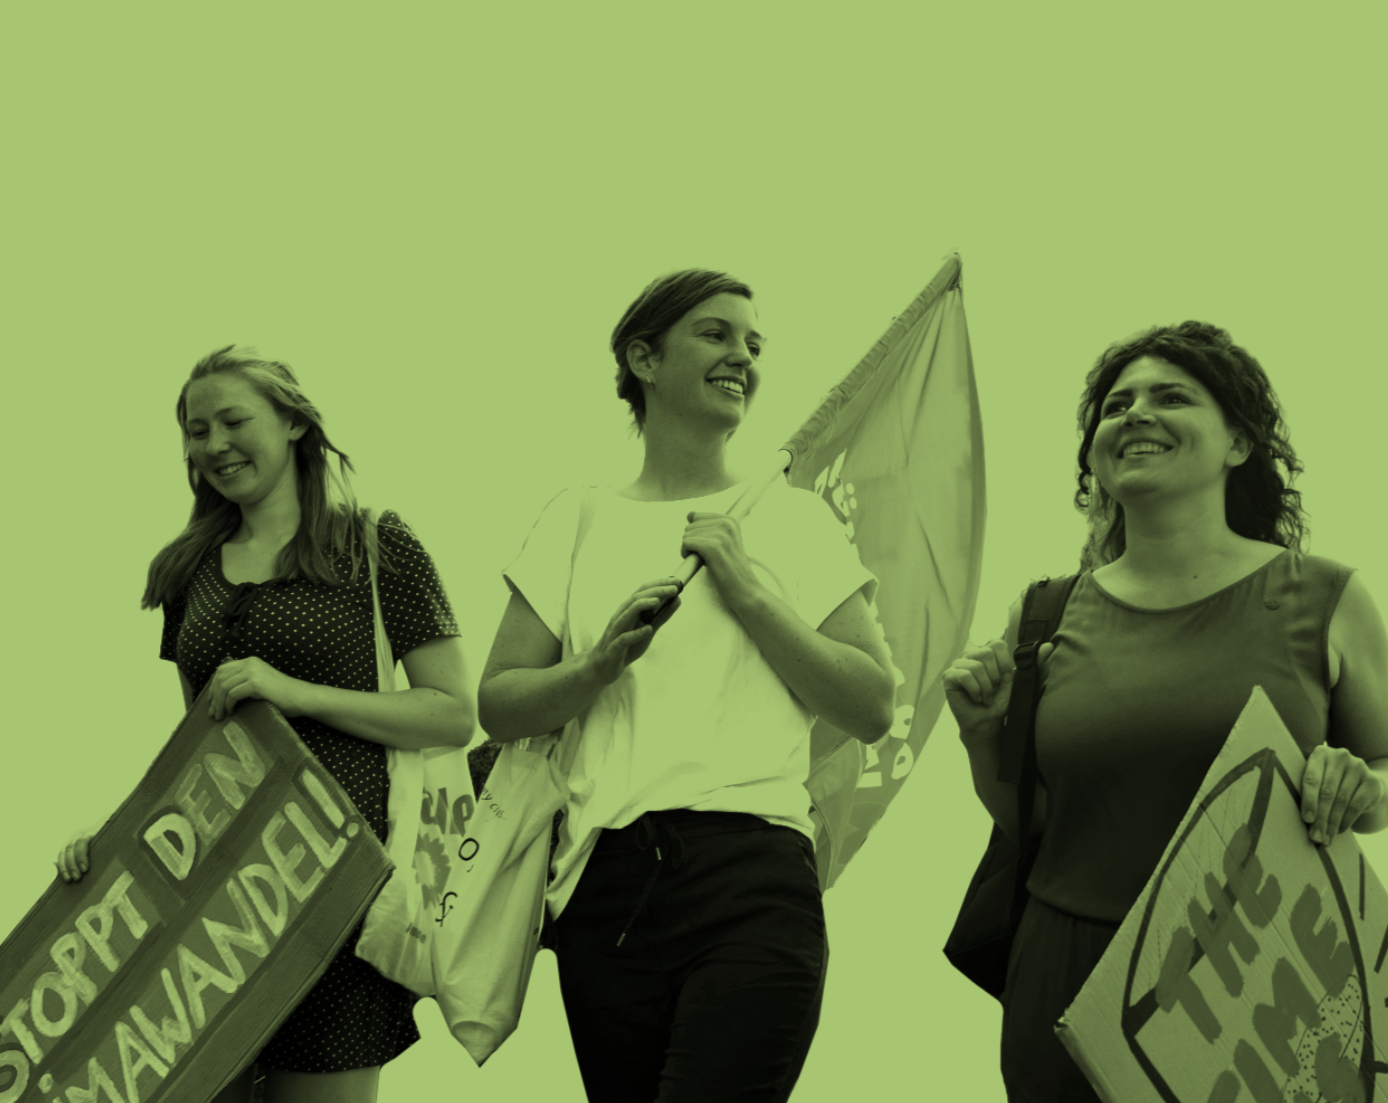 Drei junge Frauen gehen nebeneinander und lachen. Sie tragen Fahnen und Transparente, auf denen steht: "Stopp den Klimawandel!" und "The Time is Now"